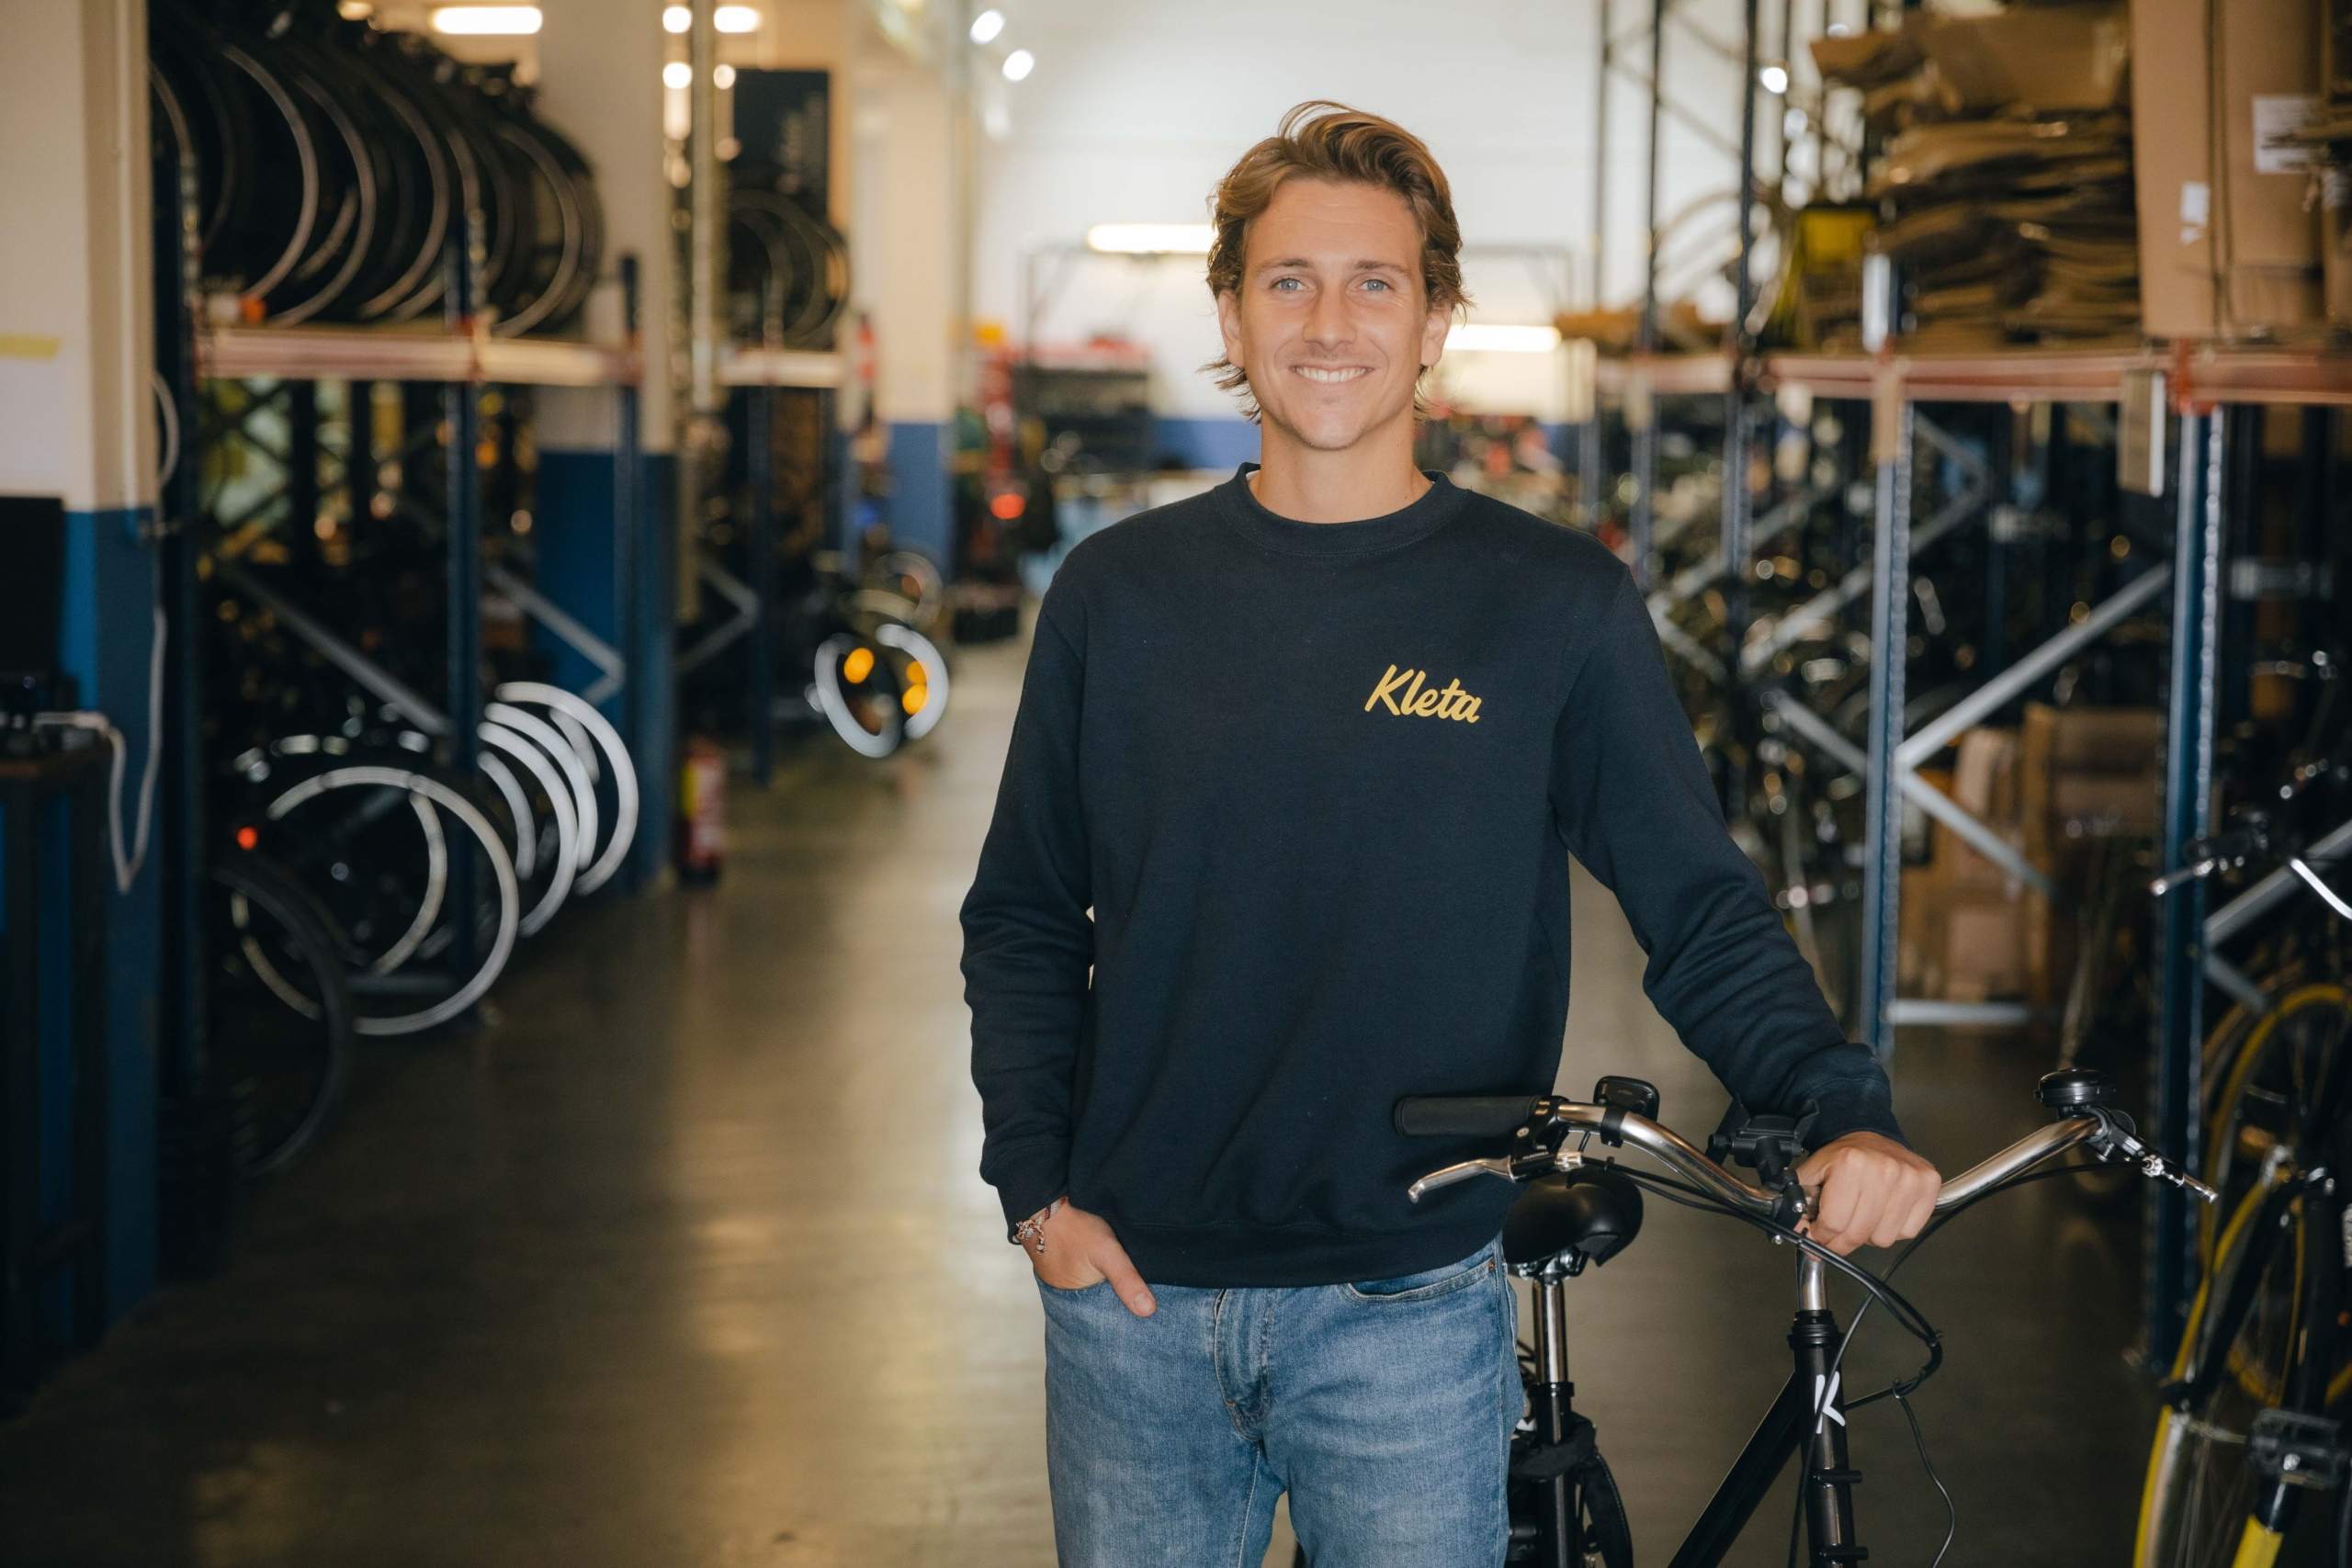 Kleta, la marca de bicicletas que une a Marc Gasol y Ter Stegen, abre nueva tienda en Barcelona